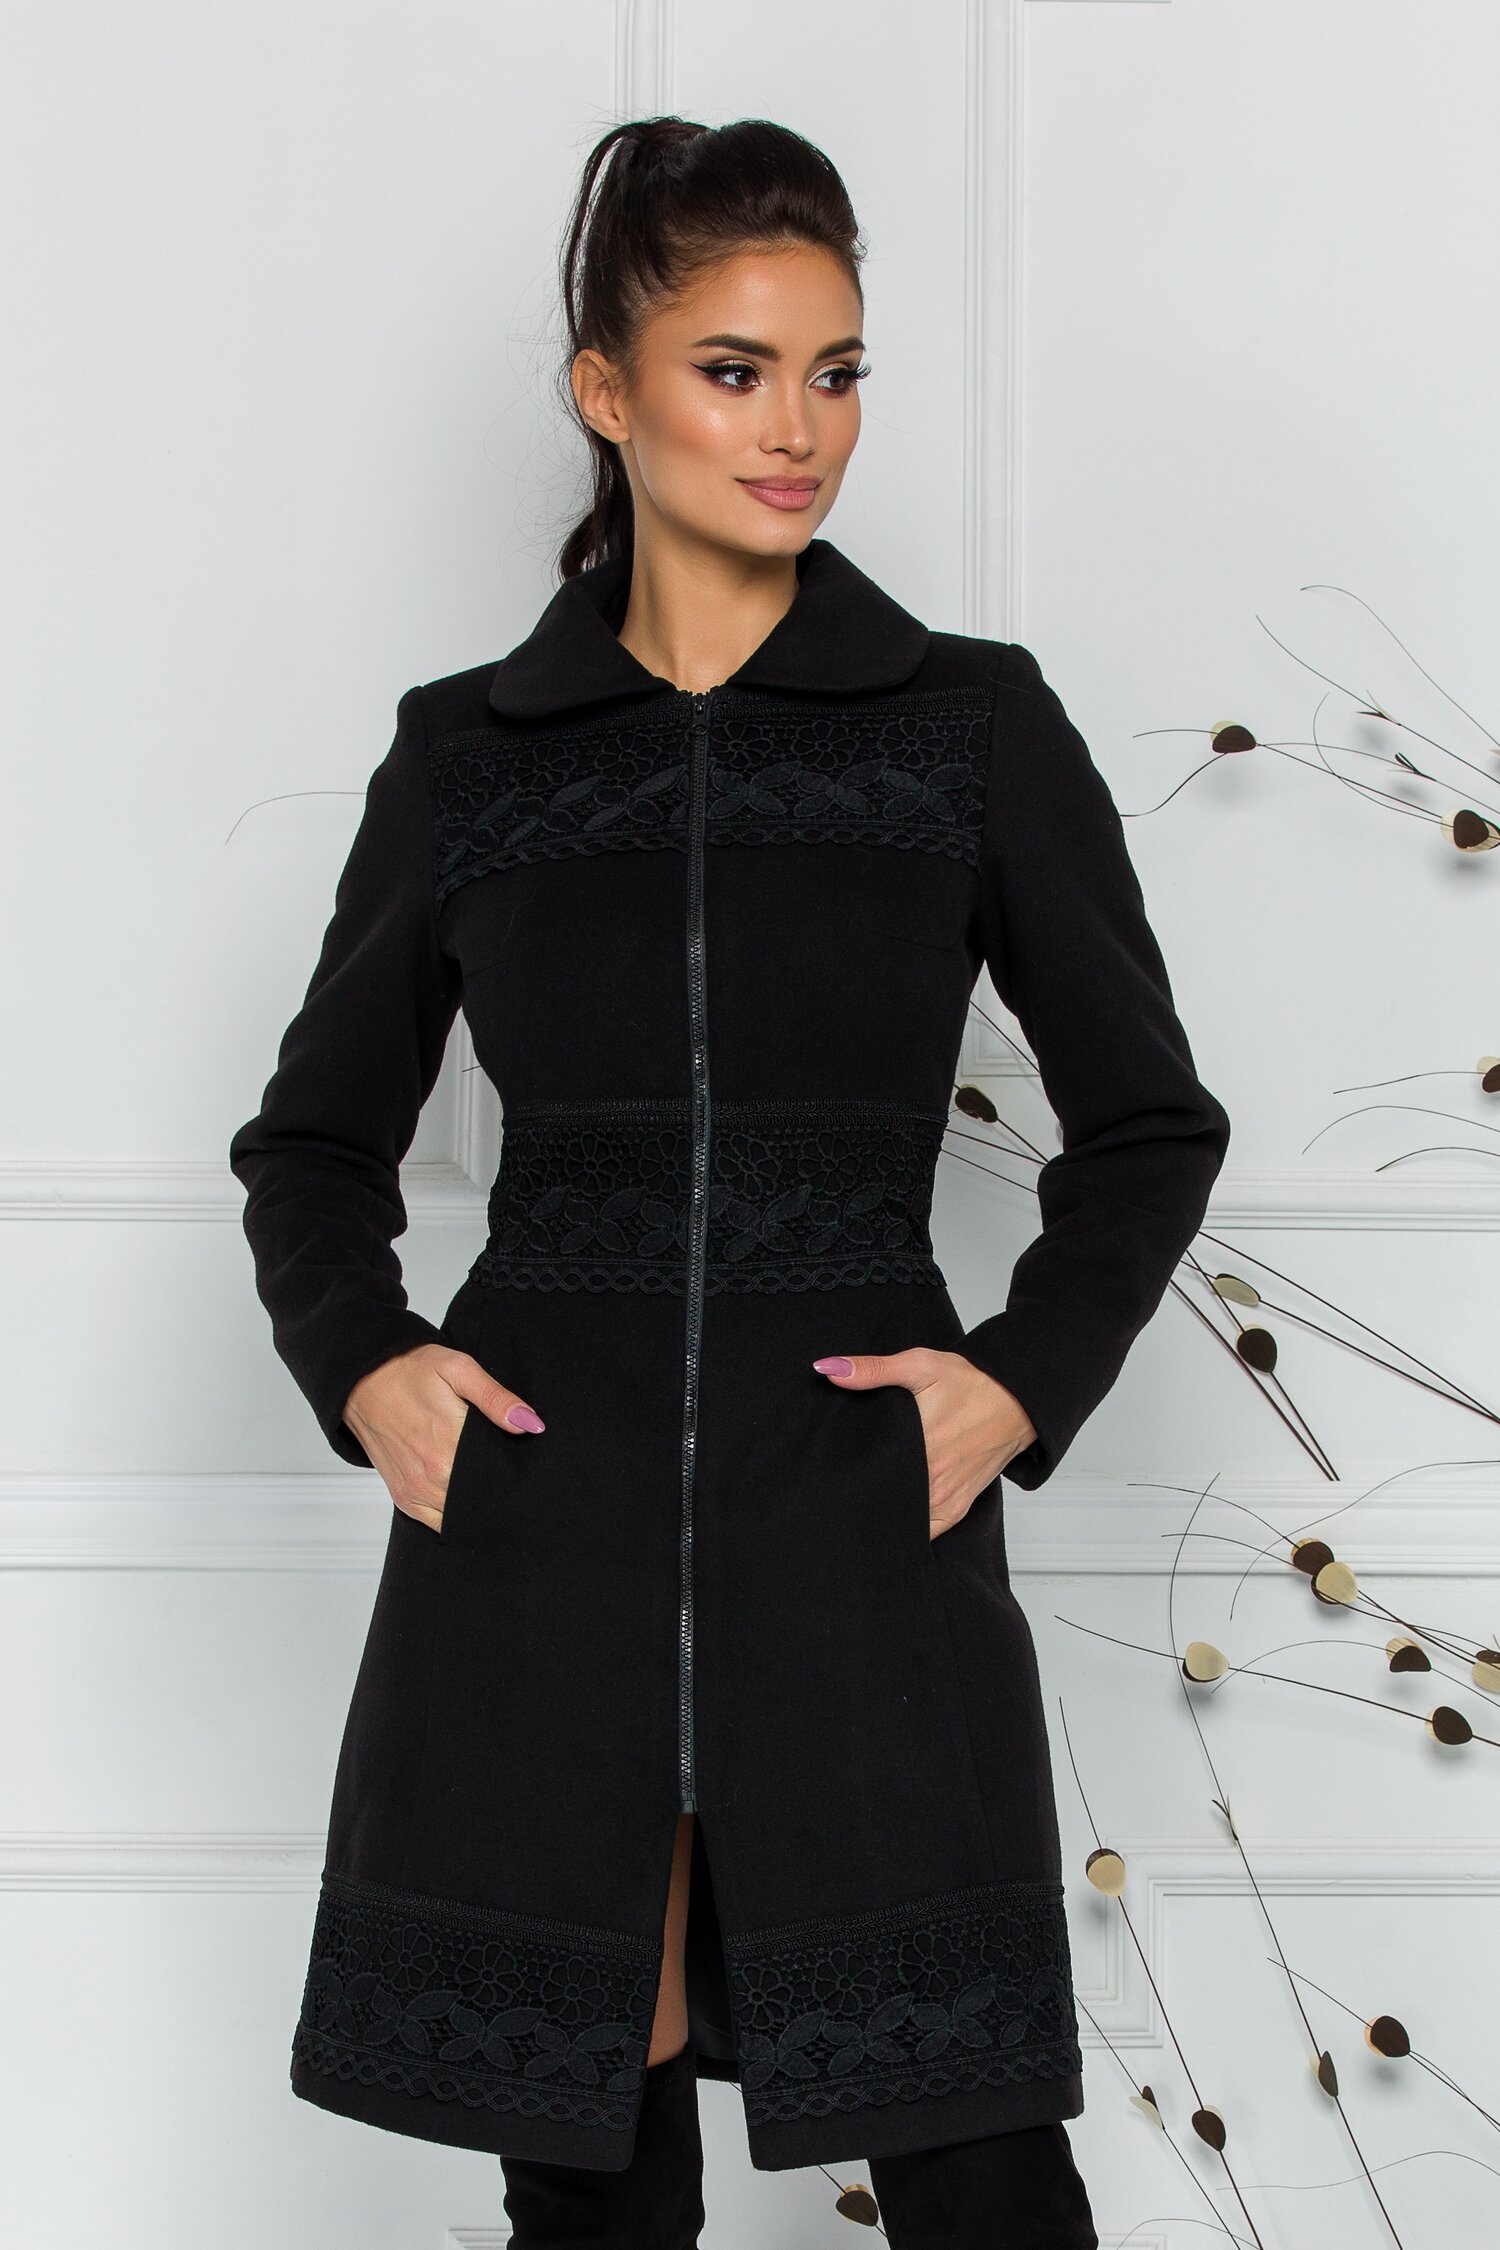 Palton dama elegant negru de seara cu broderie neagra handmade LaDonna